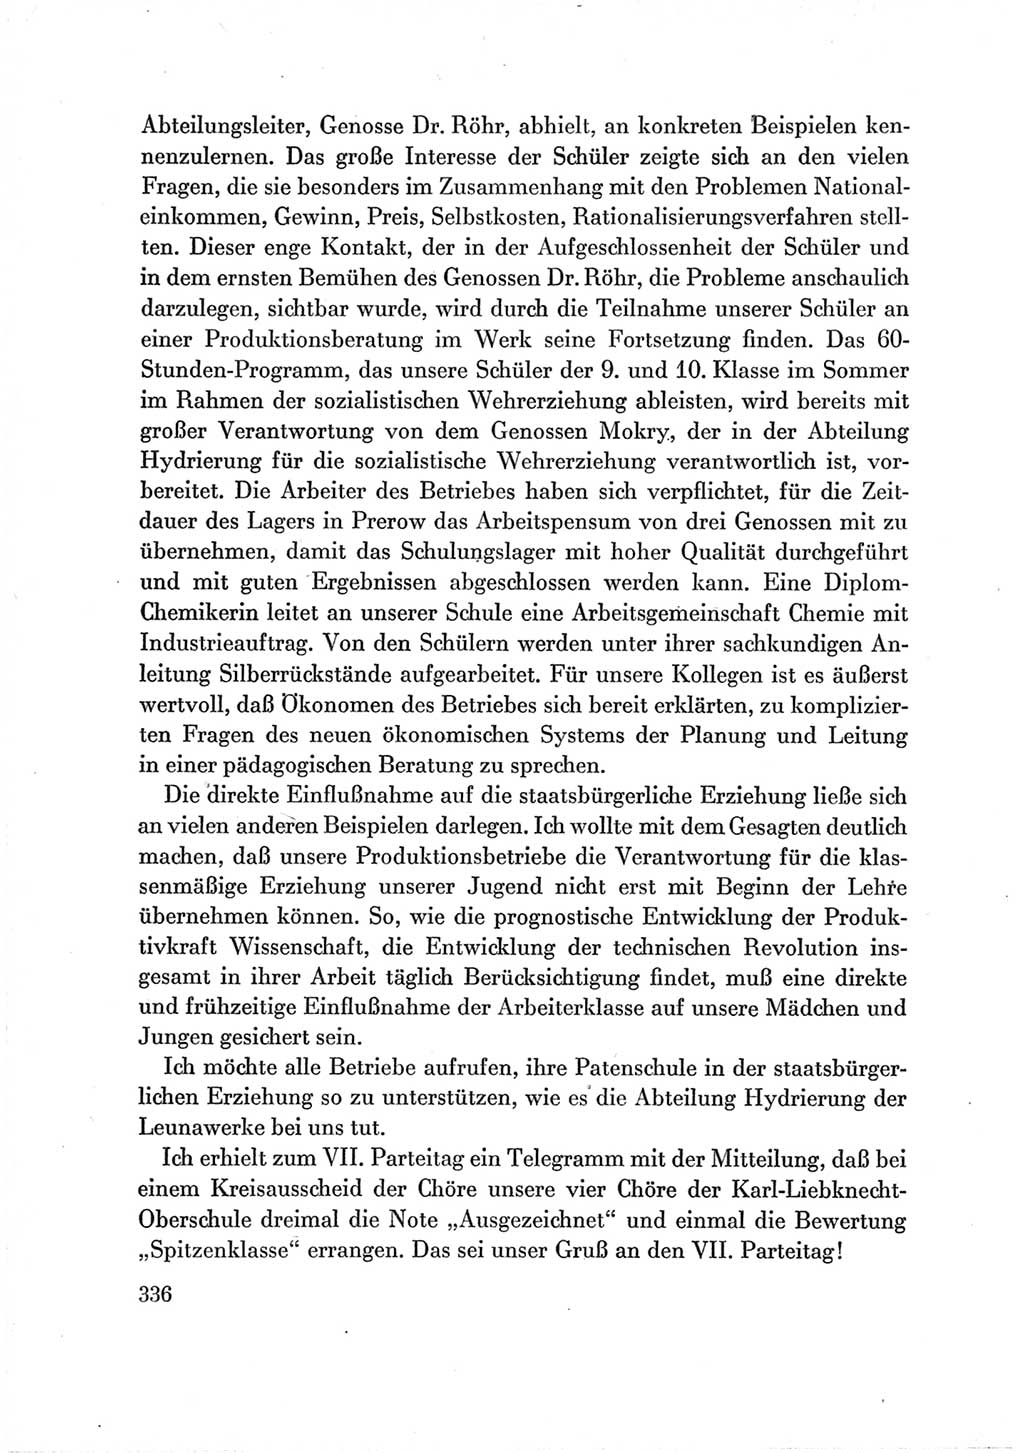 Protokoll der Verhandlungen des Ⅶ. Parteitages der Sozialistischen Einheitspartei Deutschlands (SED) [Deutsche Demokratische Republik (DDR)] 1967, Band Ⅲ, Seite 336 (Prot. Verh. Ⅶ. PT SED DDR 1967, Bd. Ⅲ, S. 336)